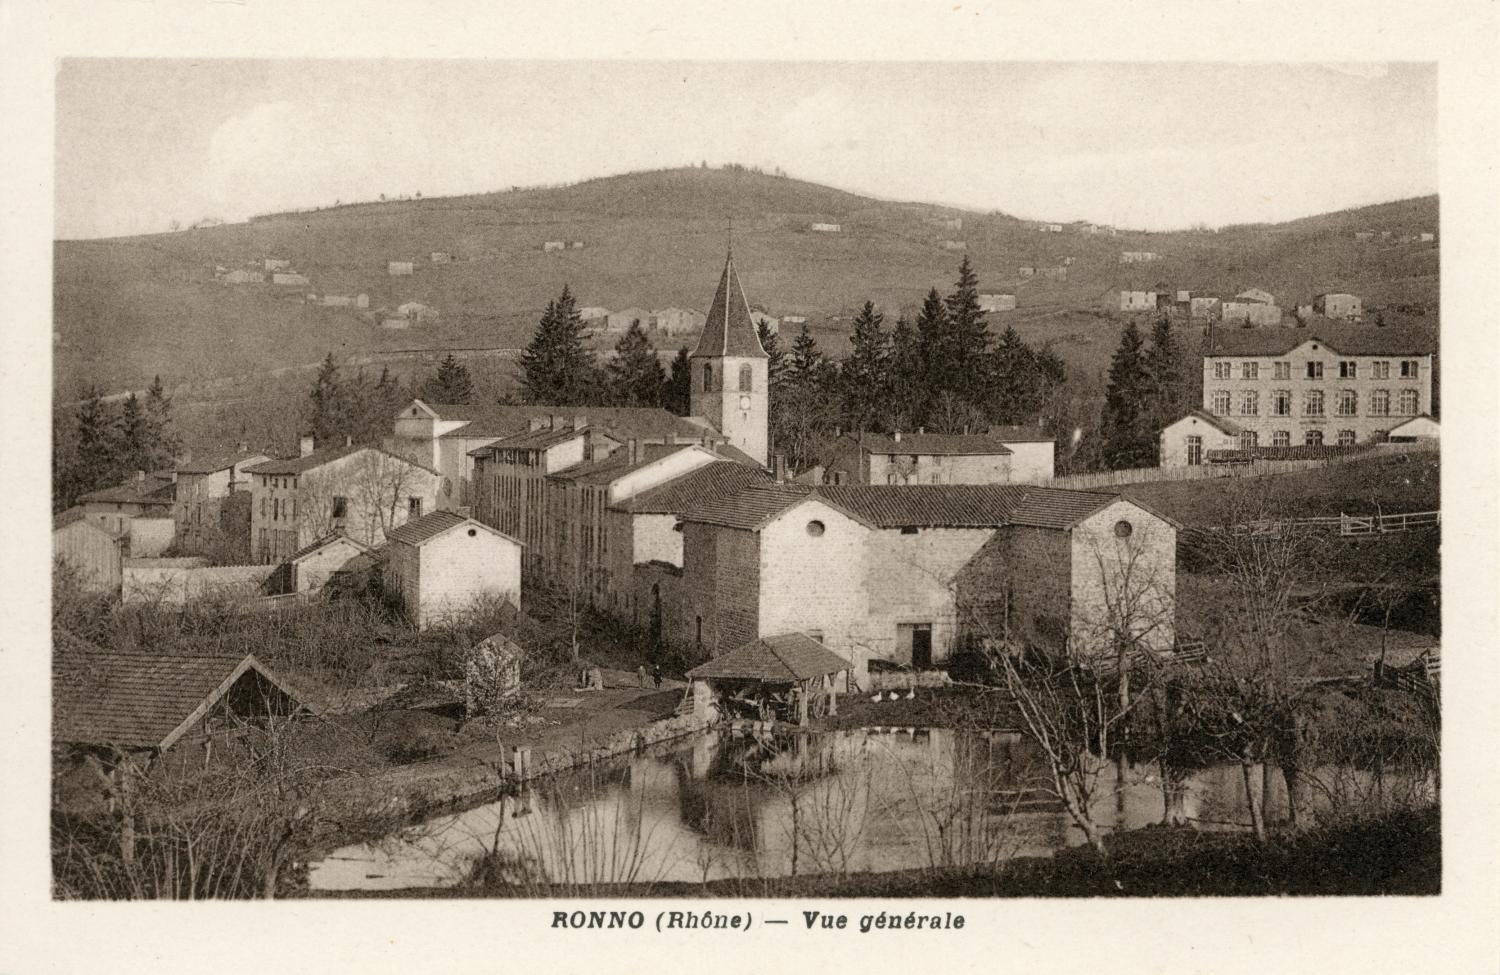 Ronno (Rhône). - Vue générale